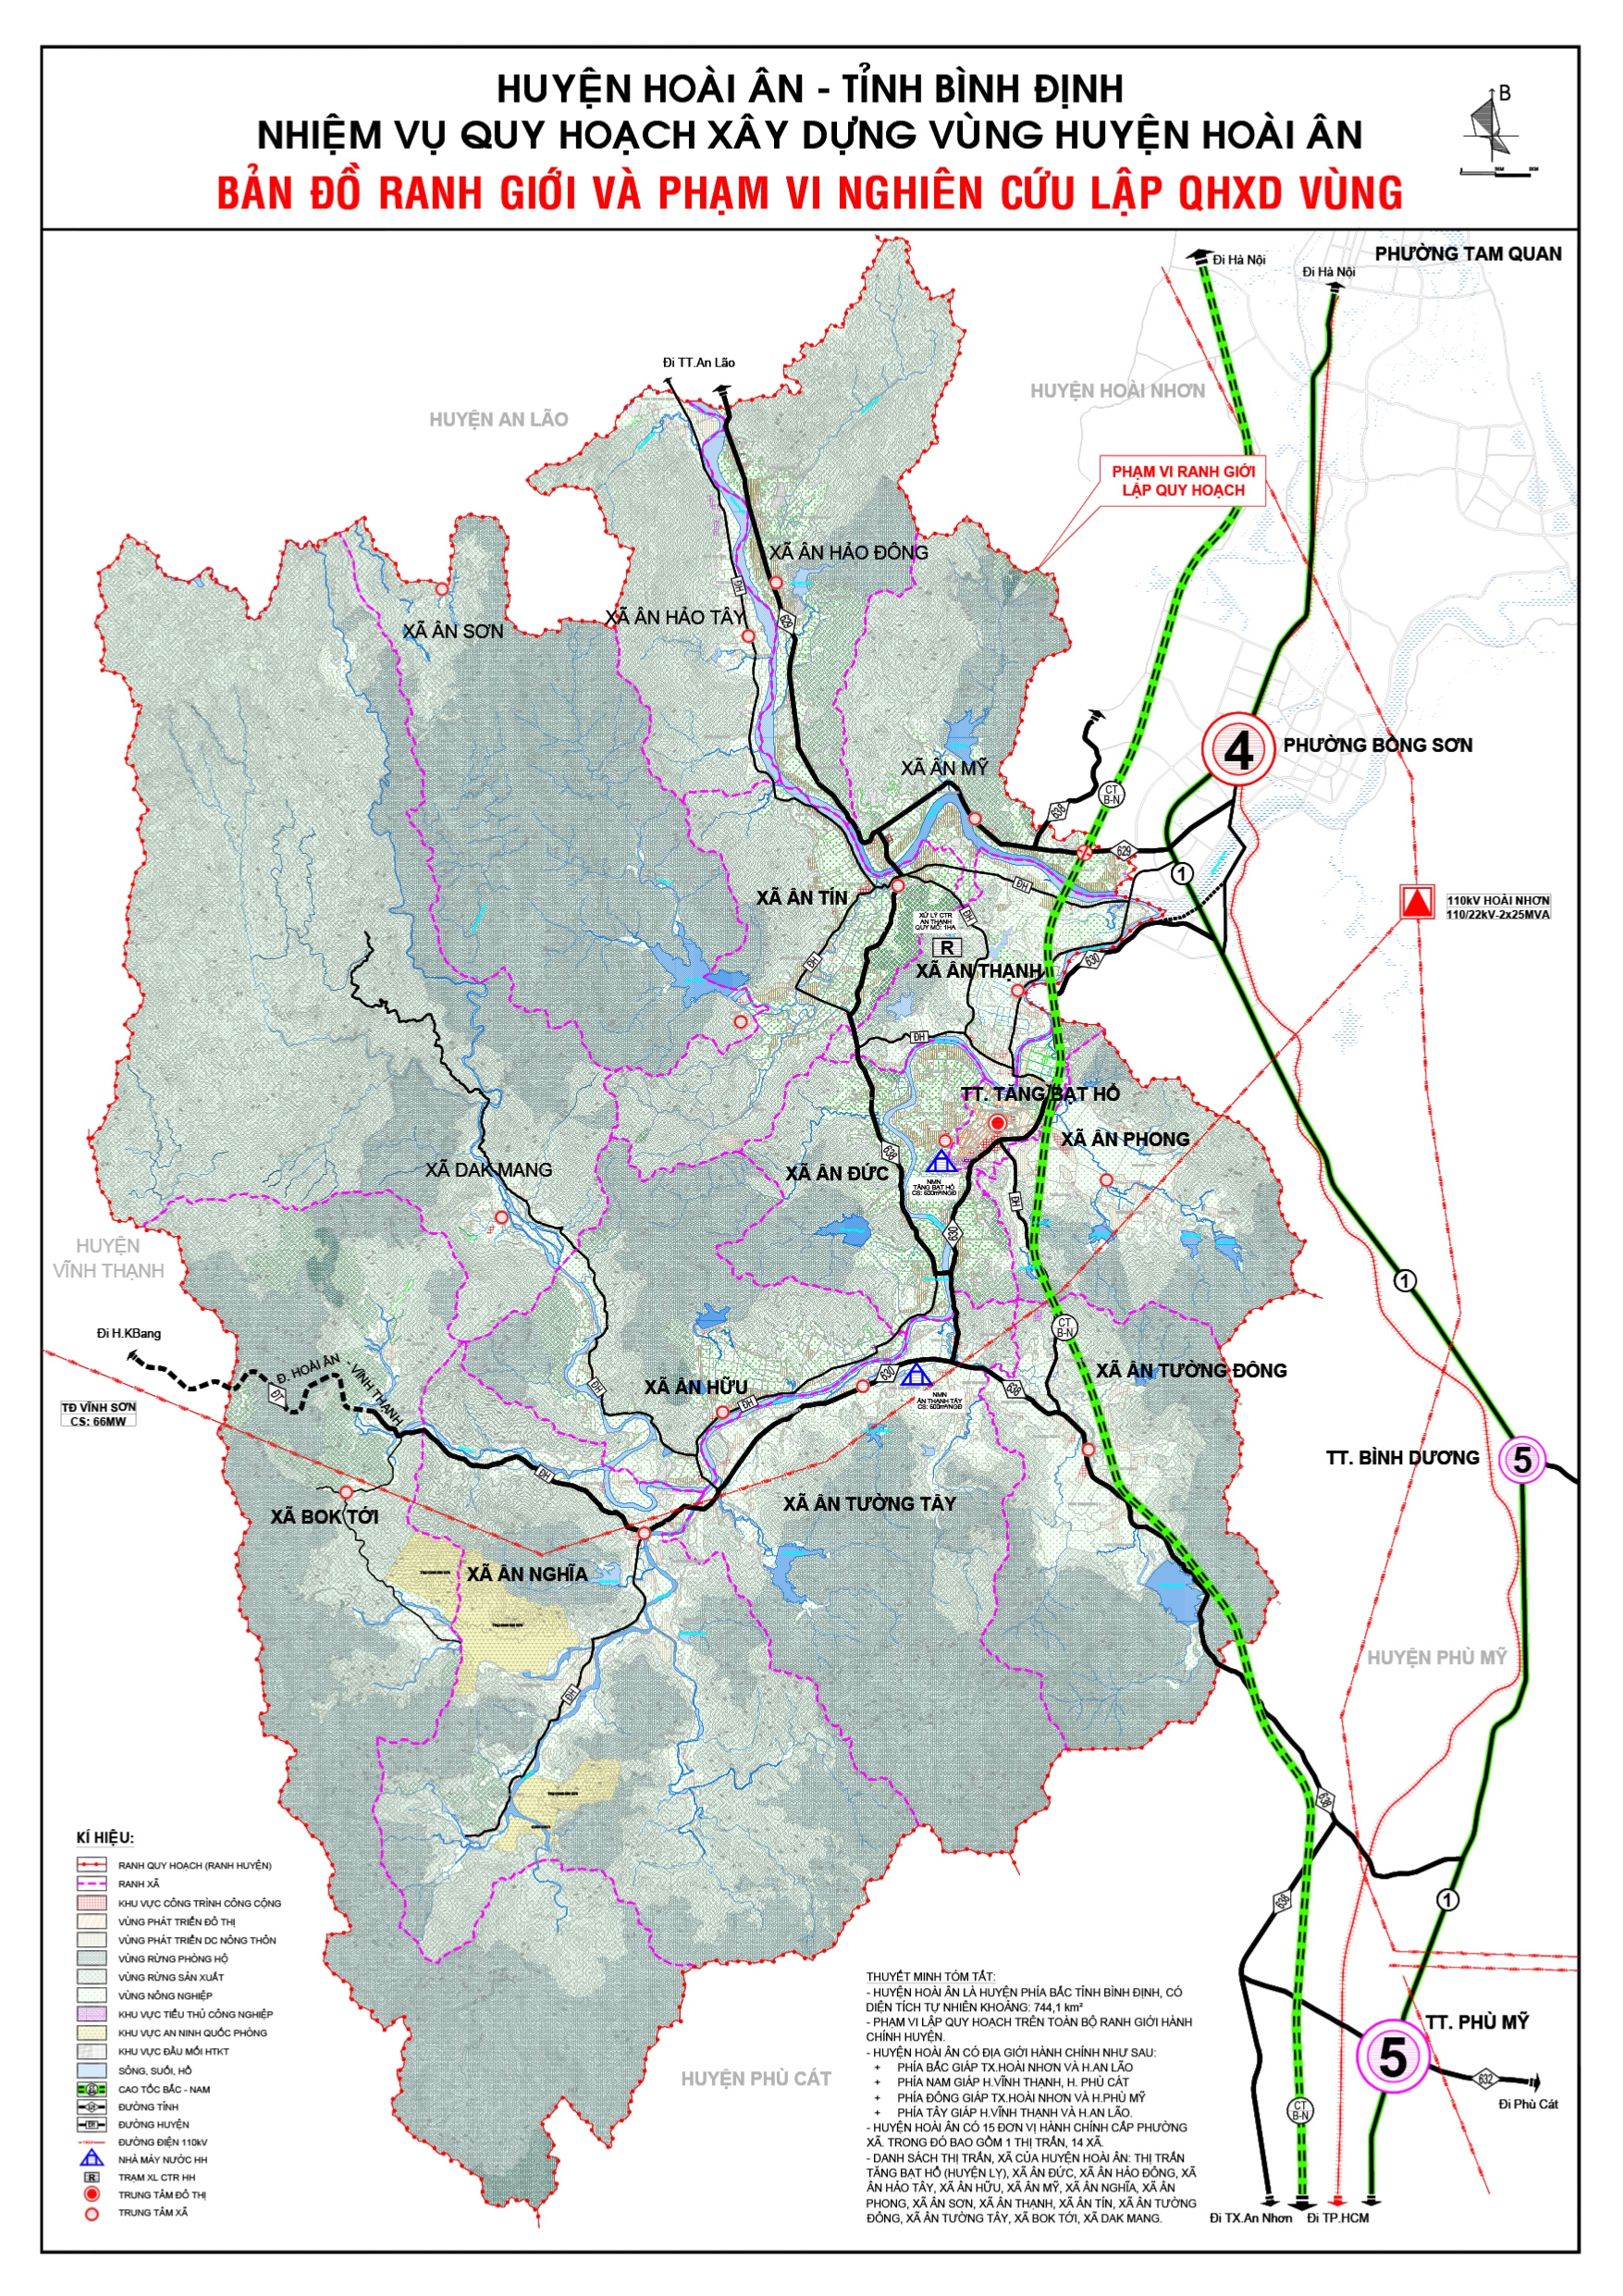 Bản đồ quy hoạch huyện Hoài Ân tỉnh Bình Định